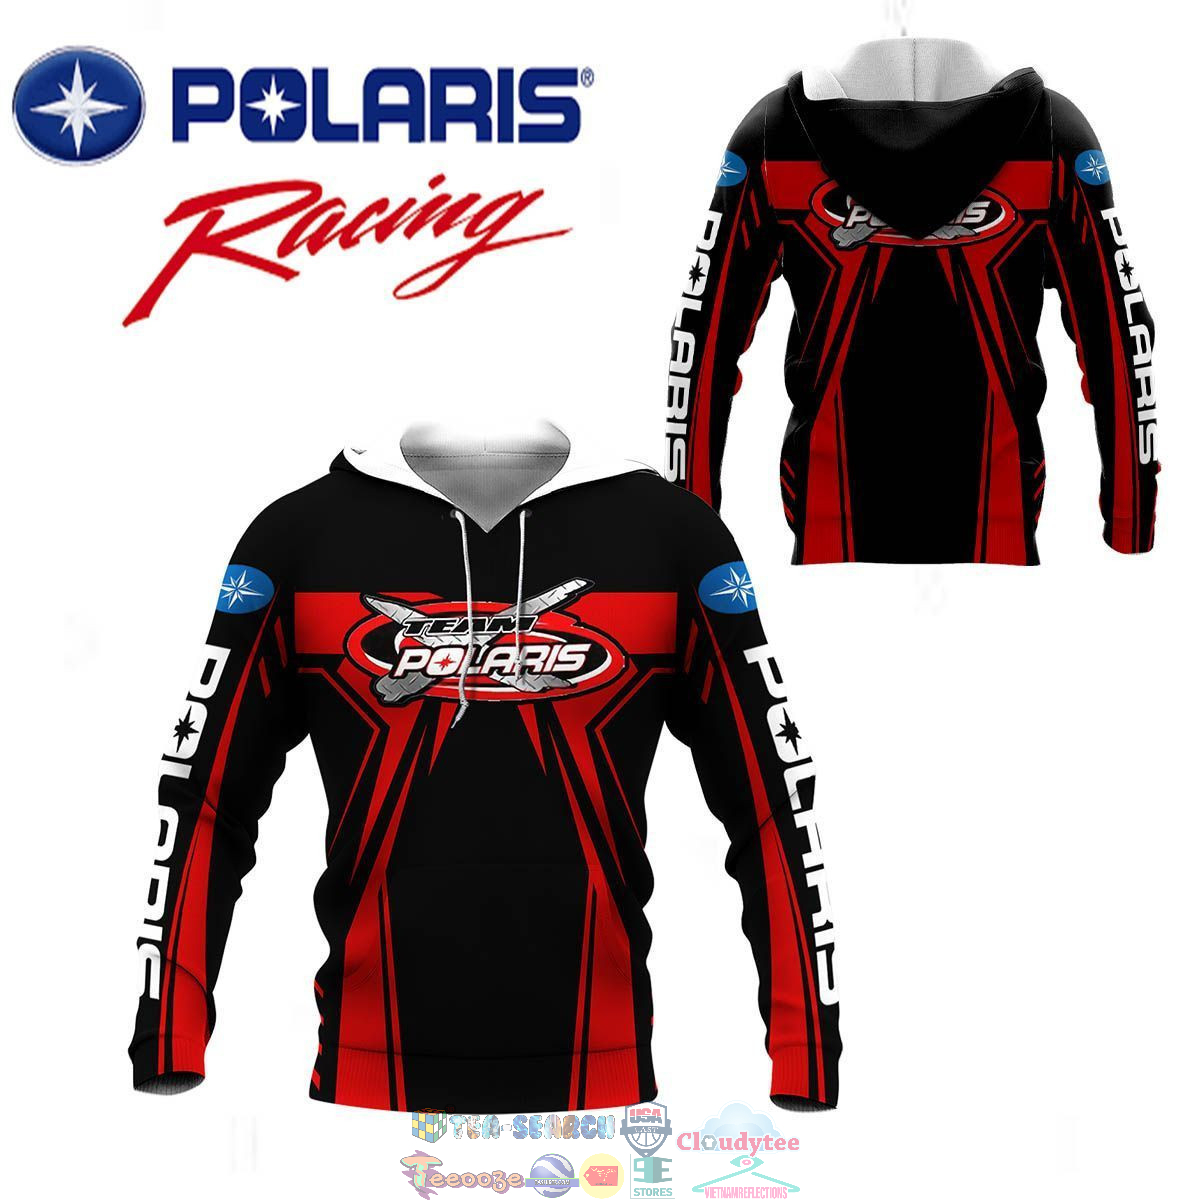 Polaris Racing Team ver 4 3D hoodie and t-shirt